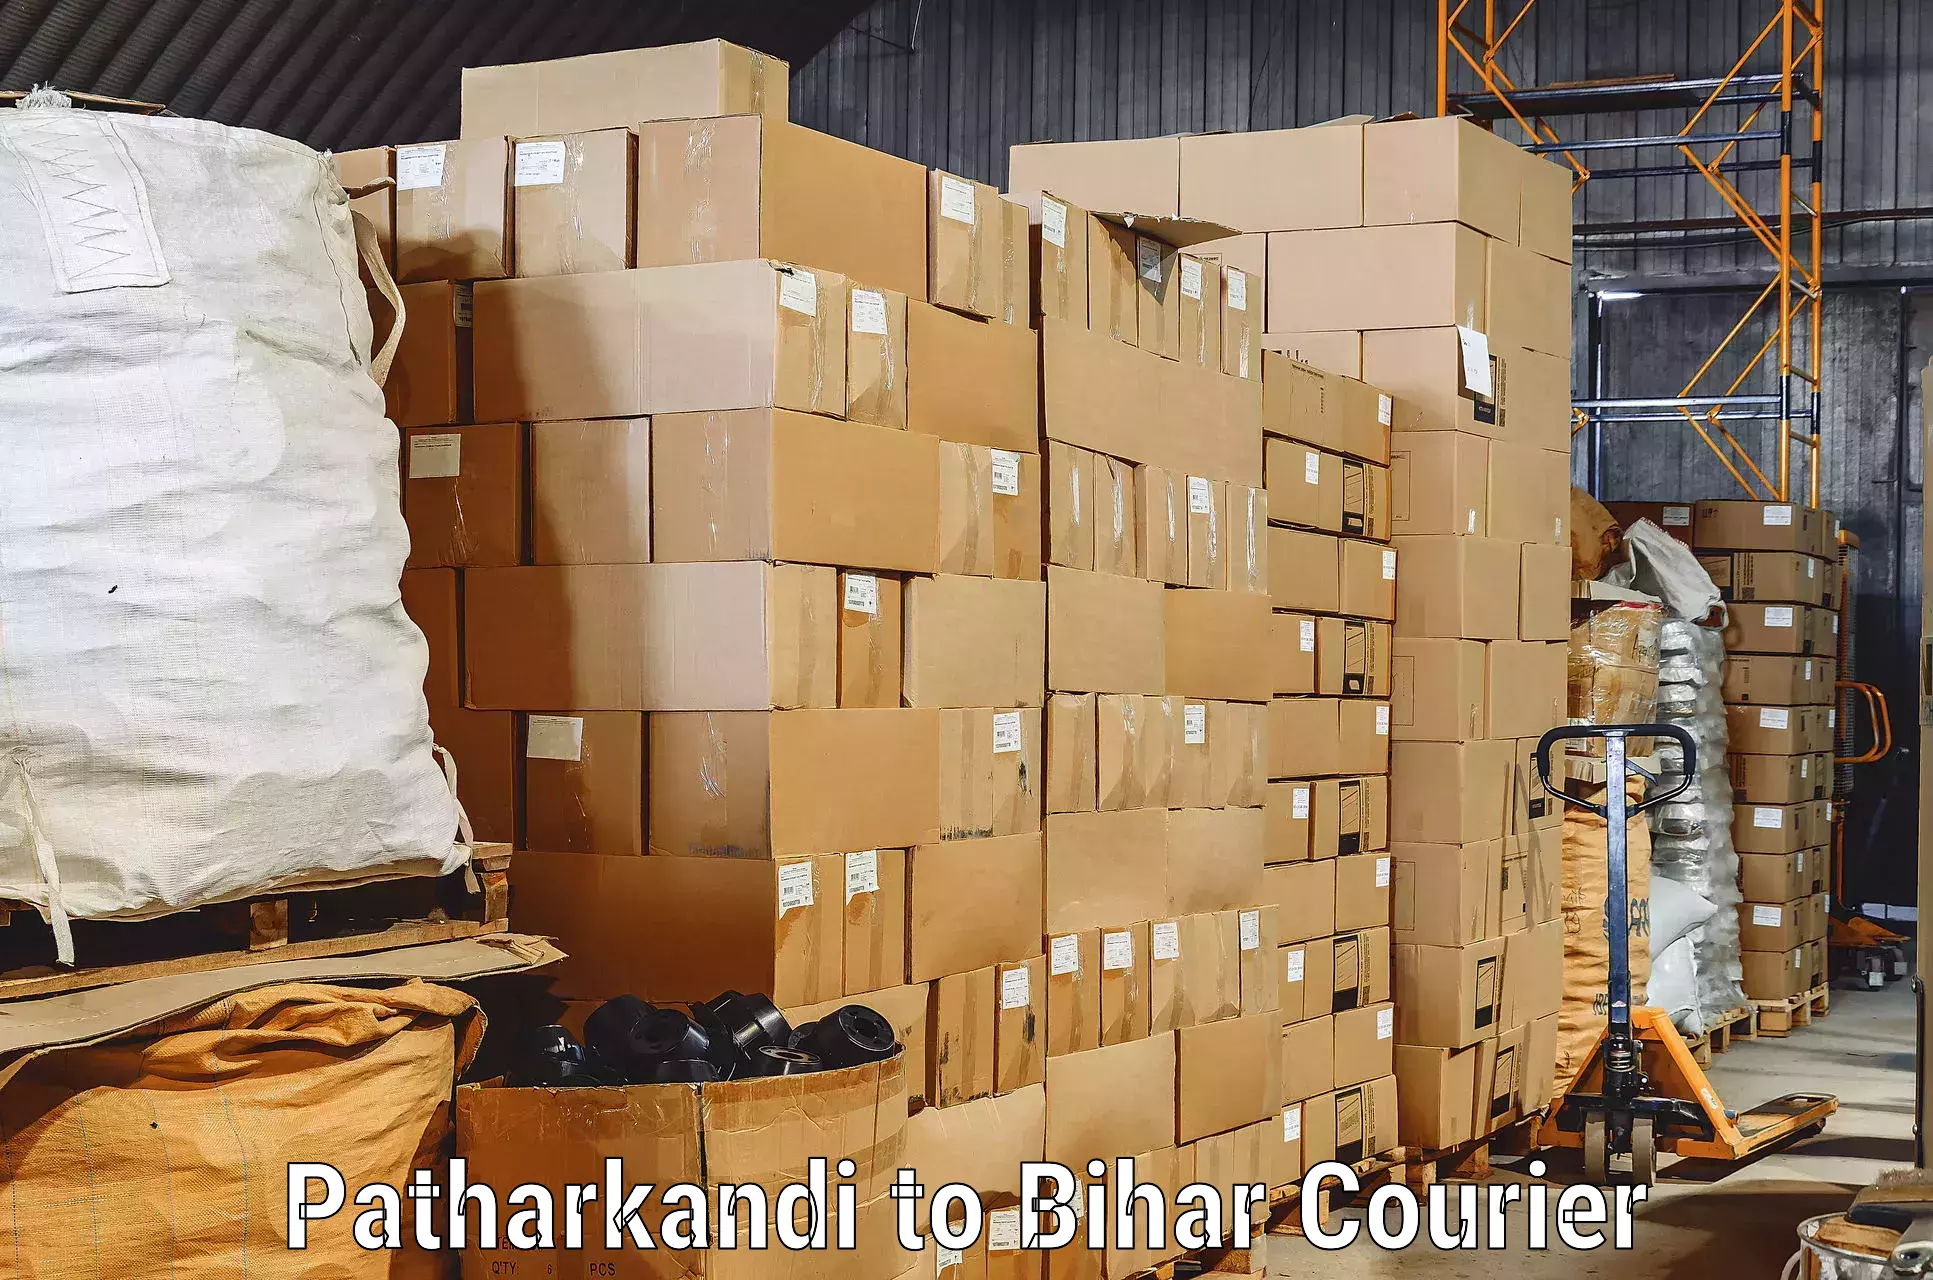 Professional moving assistance Patharkandi to Barhiya